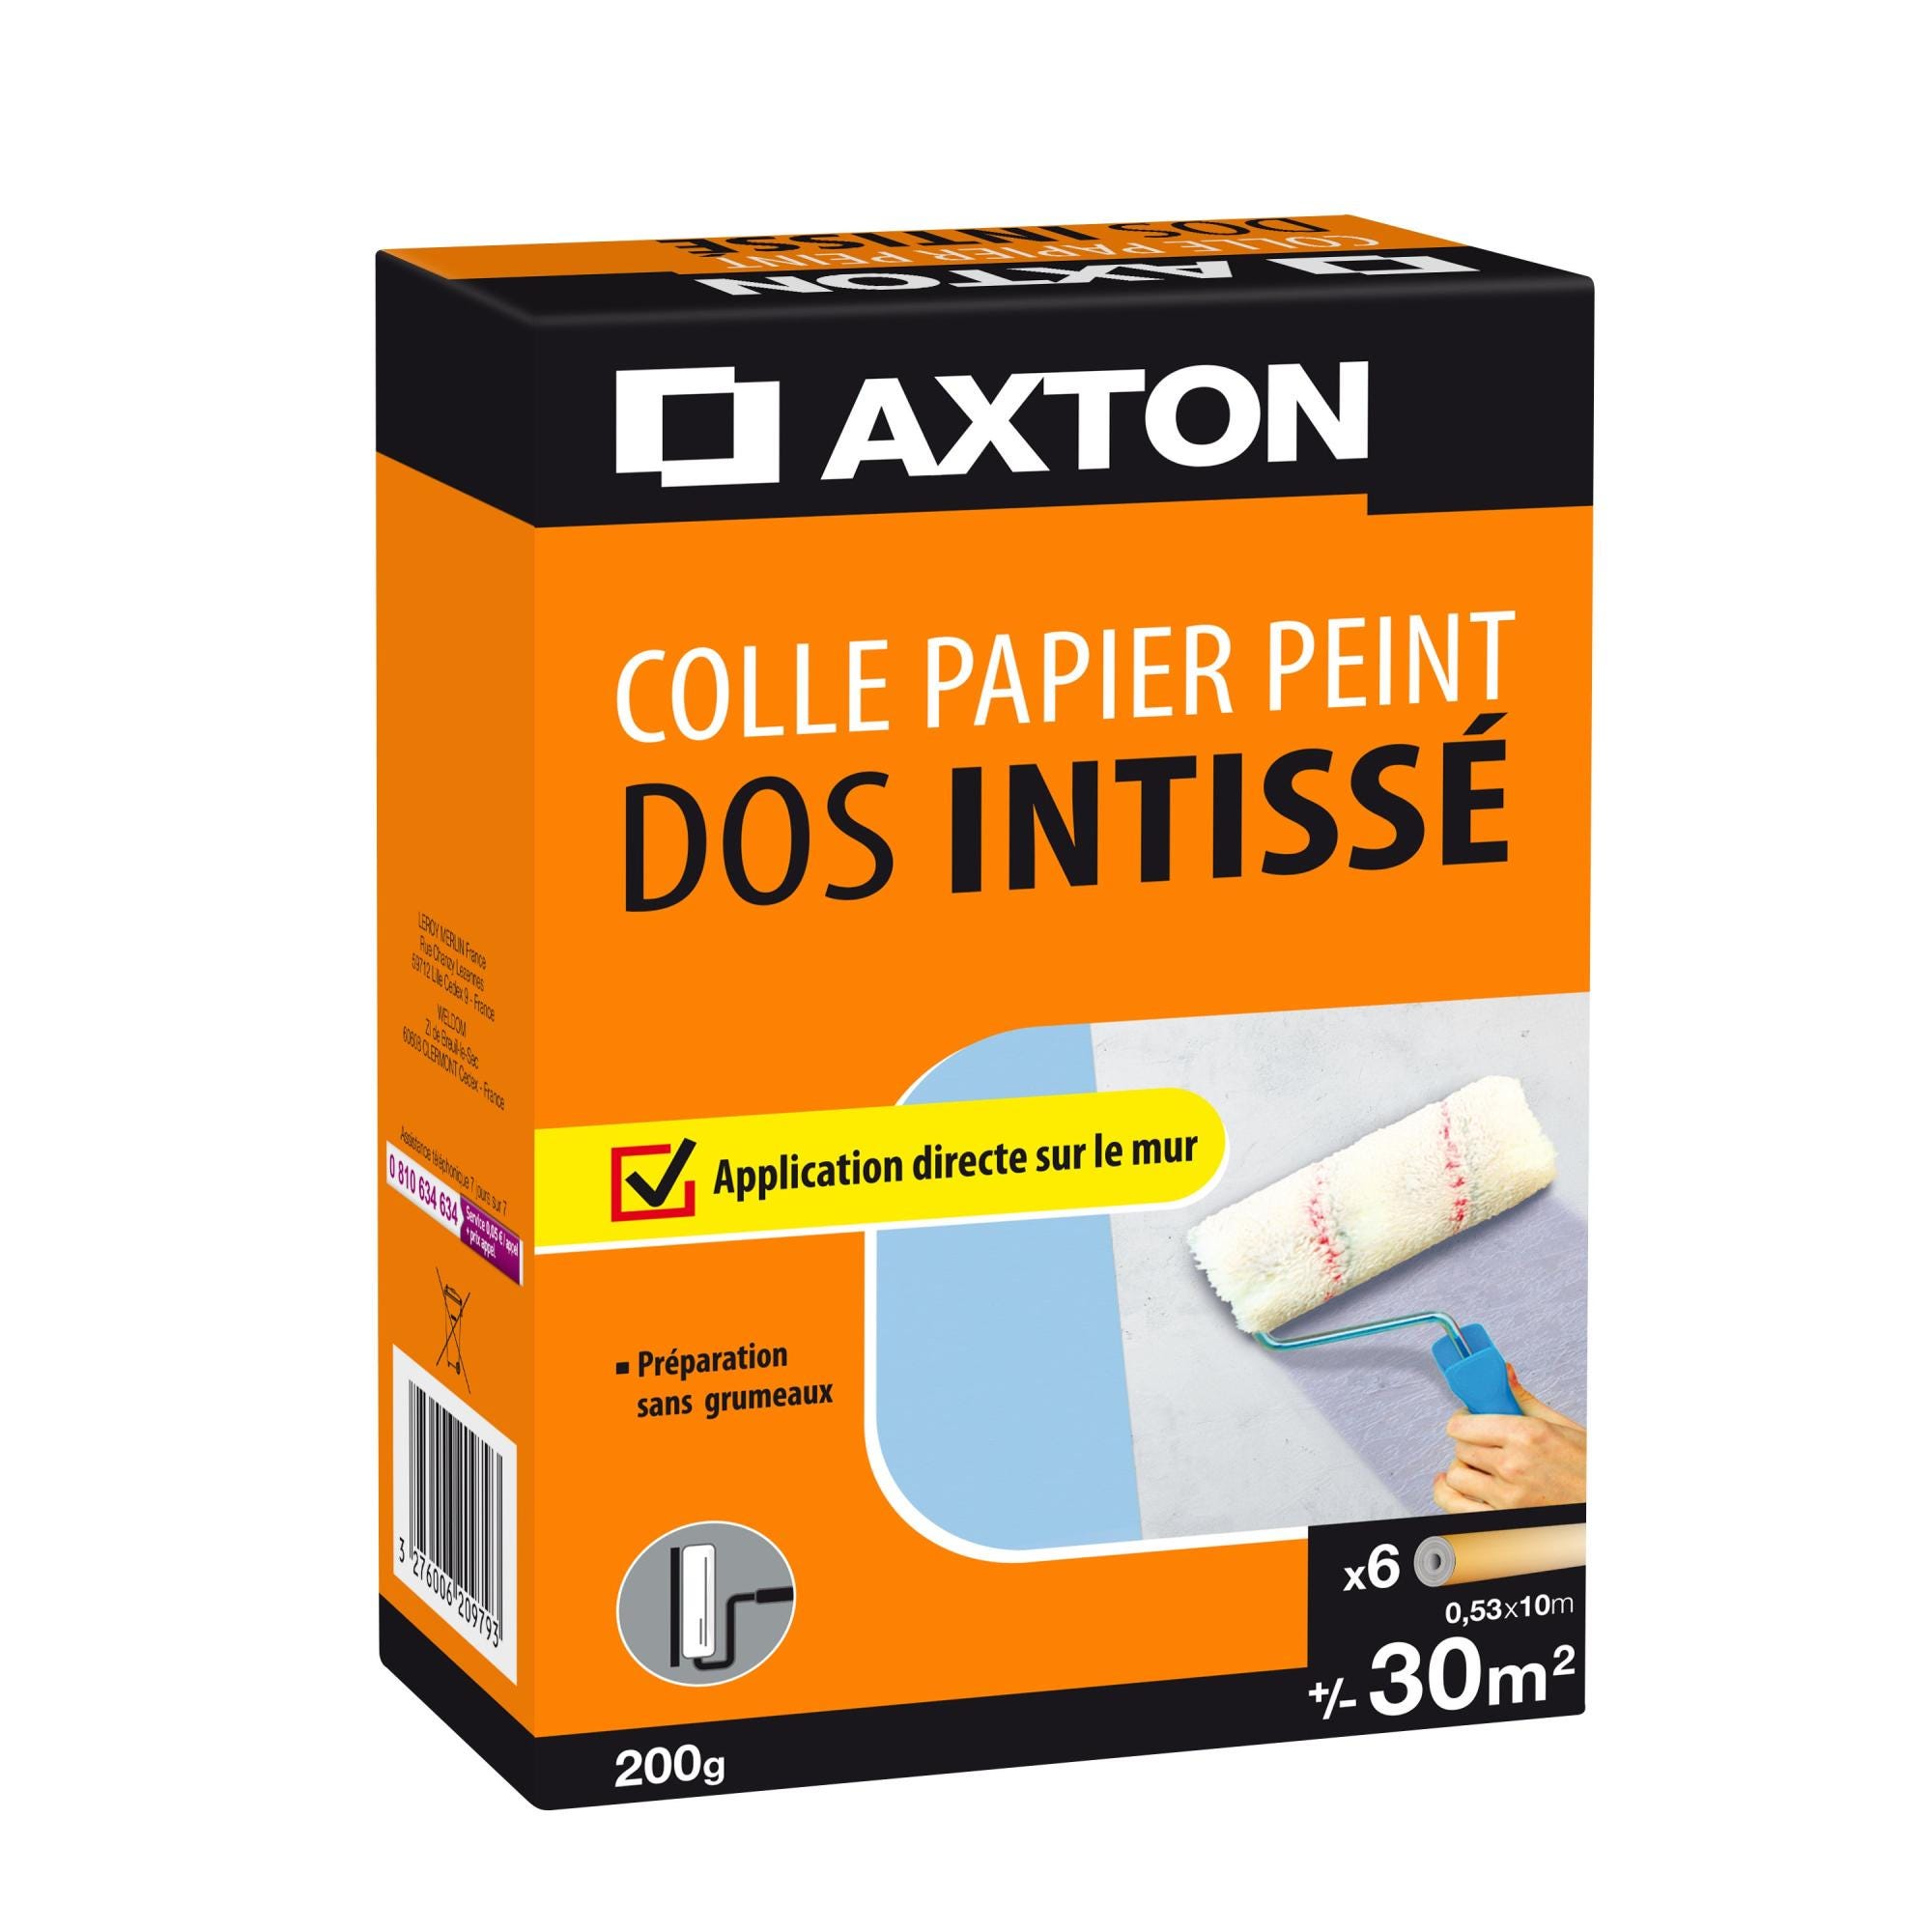 Colle Poudre papier peint intissé AXTON, 0.2 kg